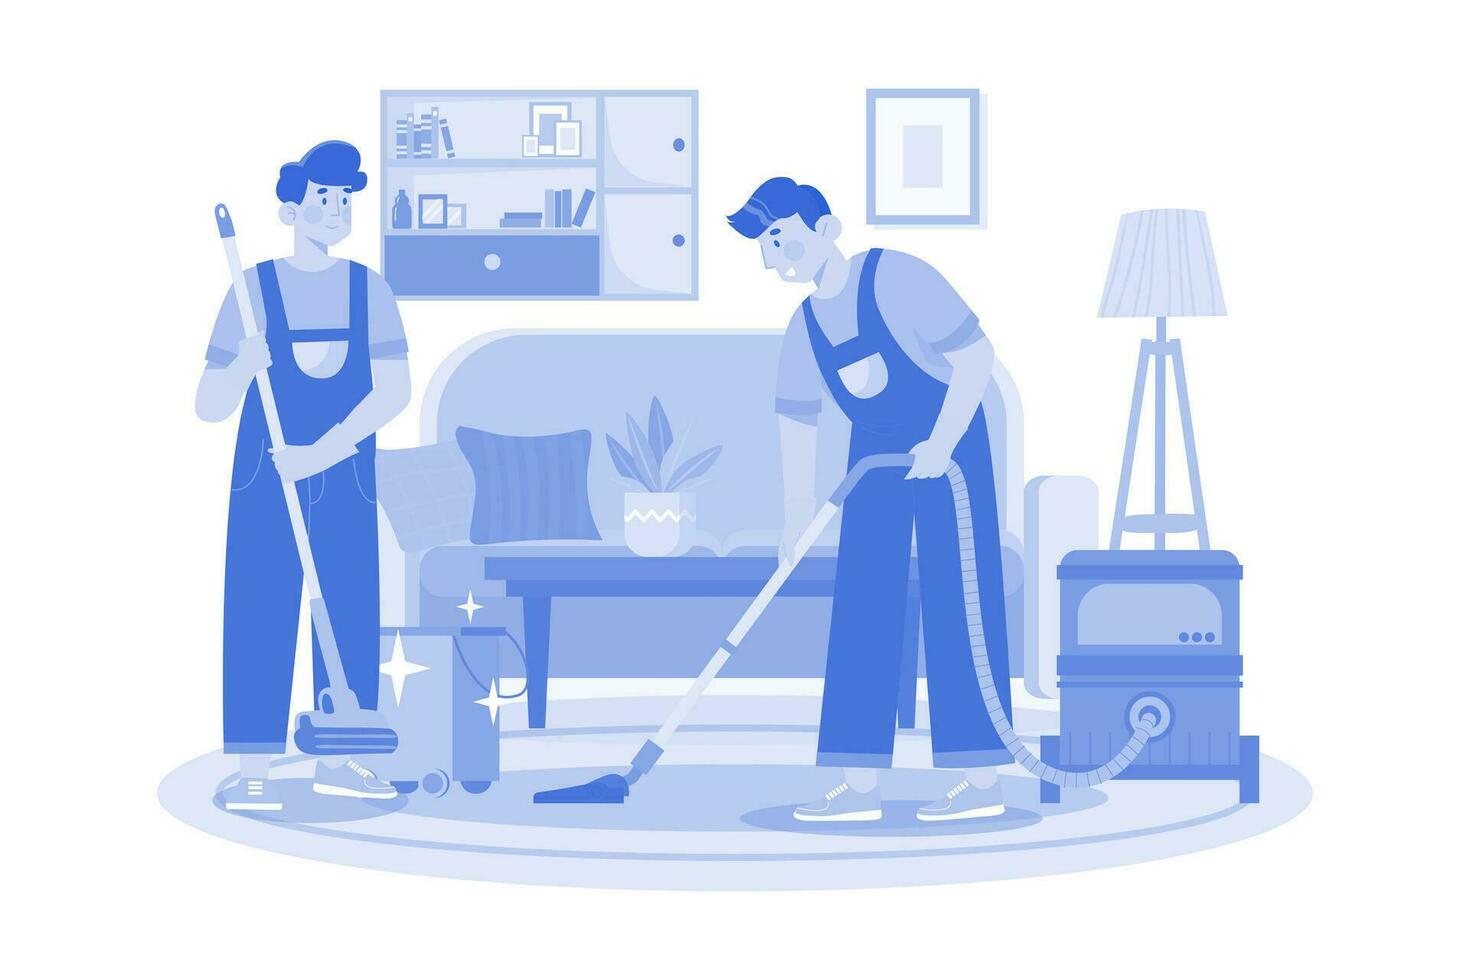 trabajador masculino haciendo aspiradora limpiando el piso en la sala de estar vector